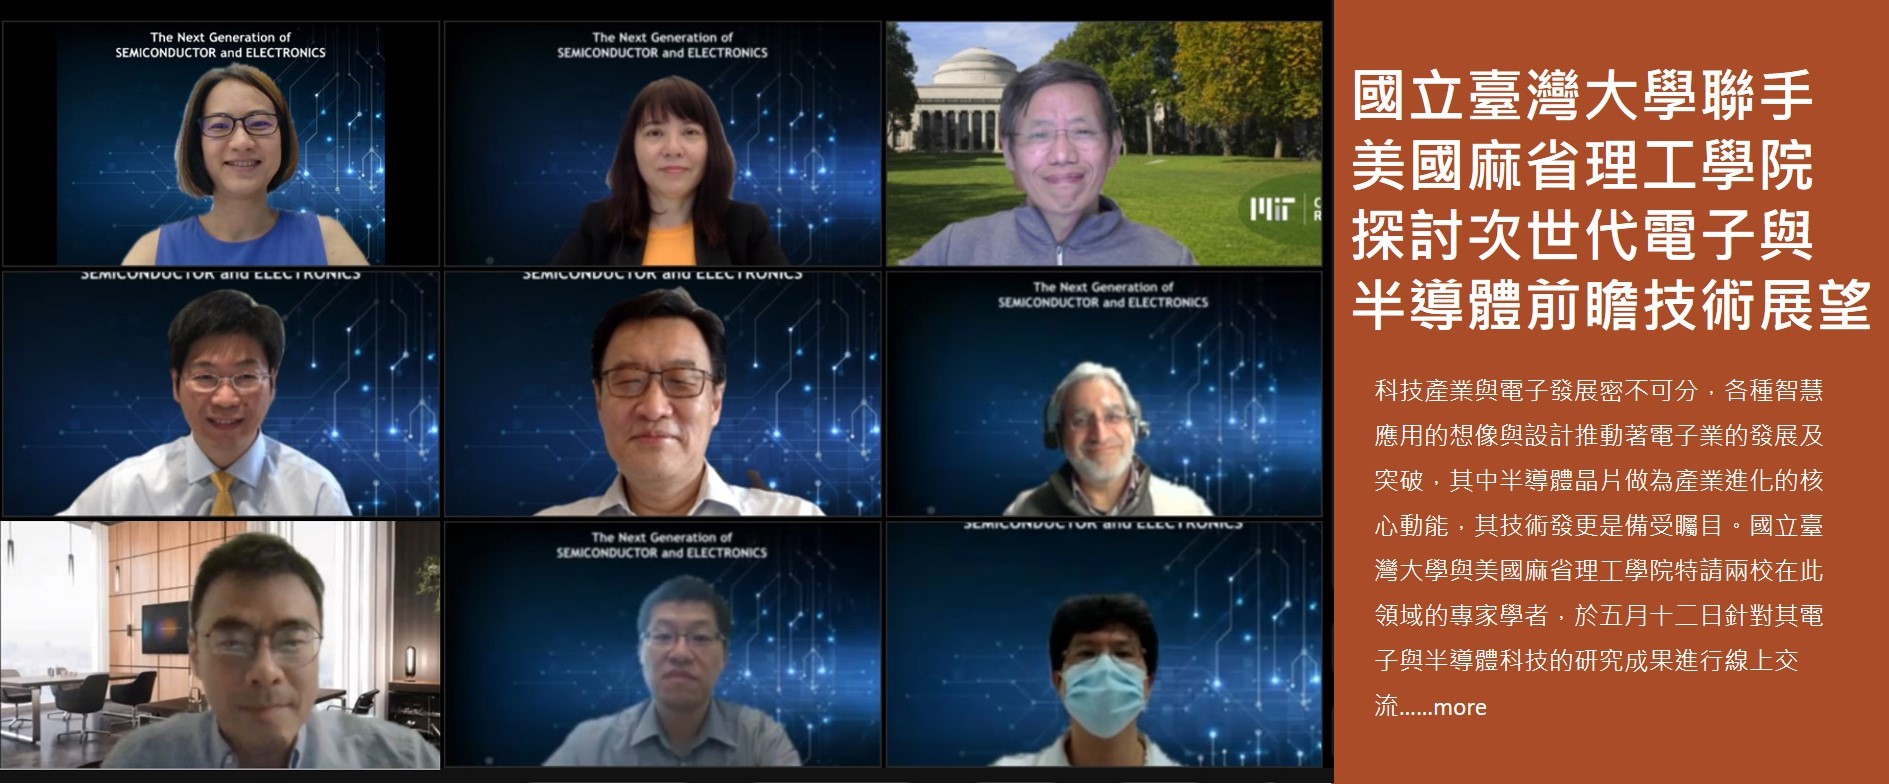 國立臺灣大學聯手美國麻省理工學院 探討次世代電子與半導體前瞻技術展望